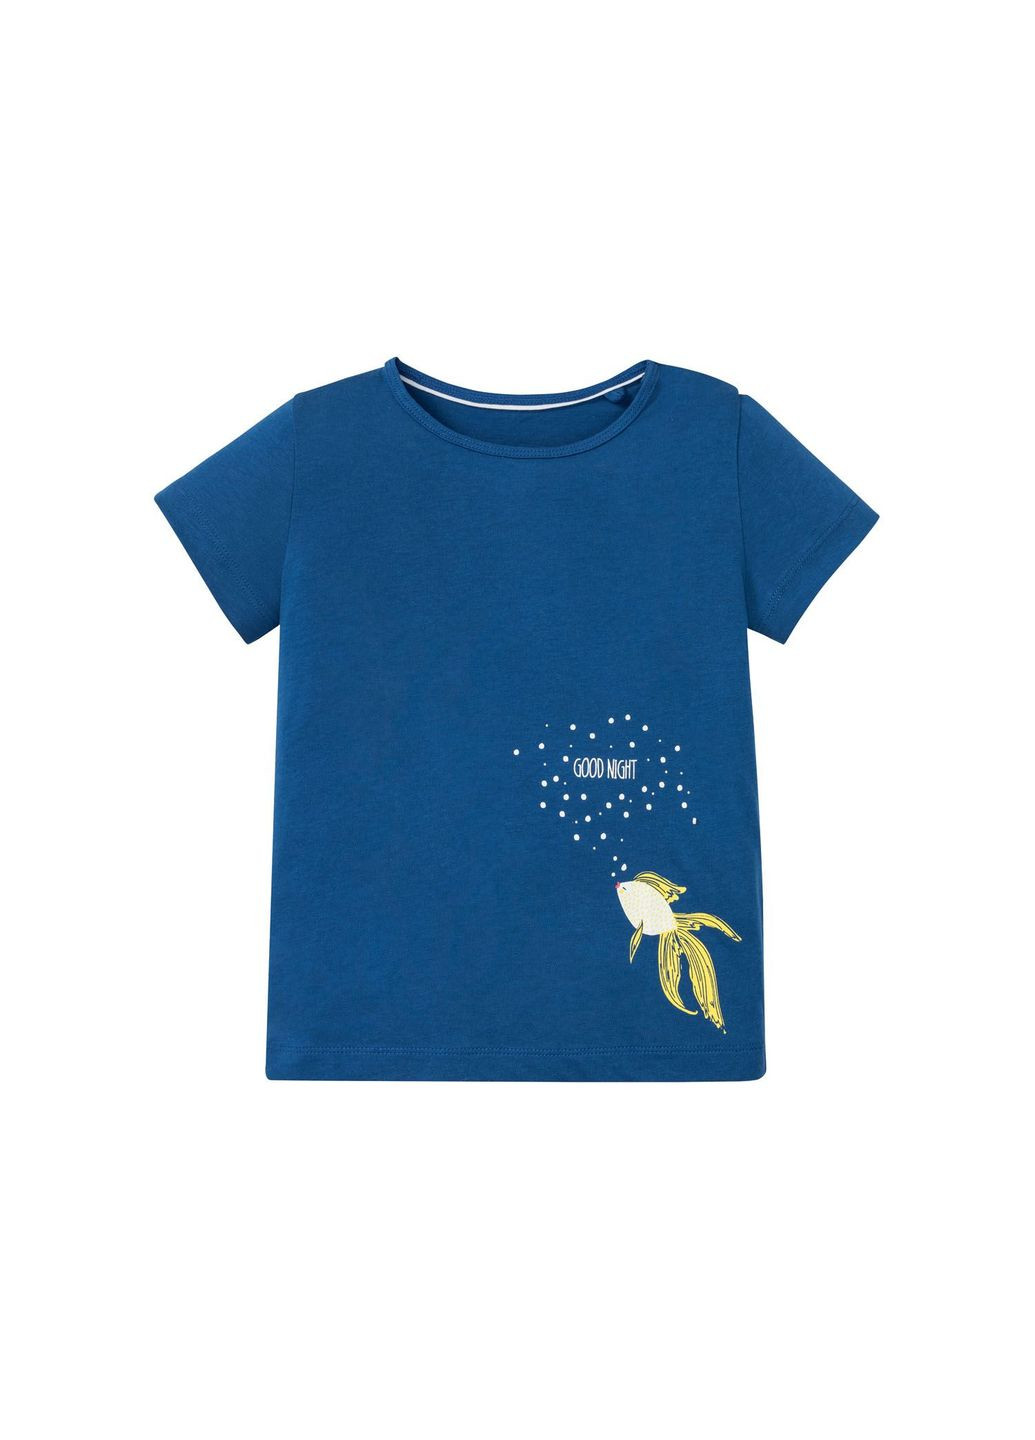 Синяя пижама (футболка и шорты) для девочки 349605-н Lupilu